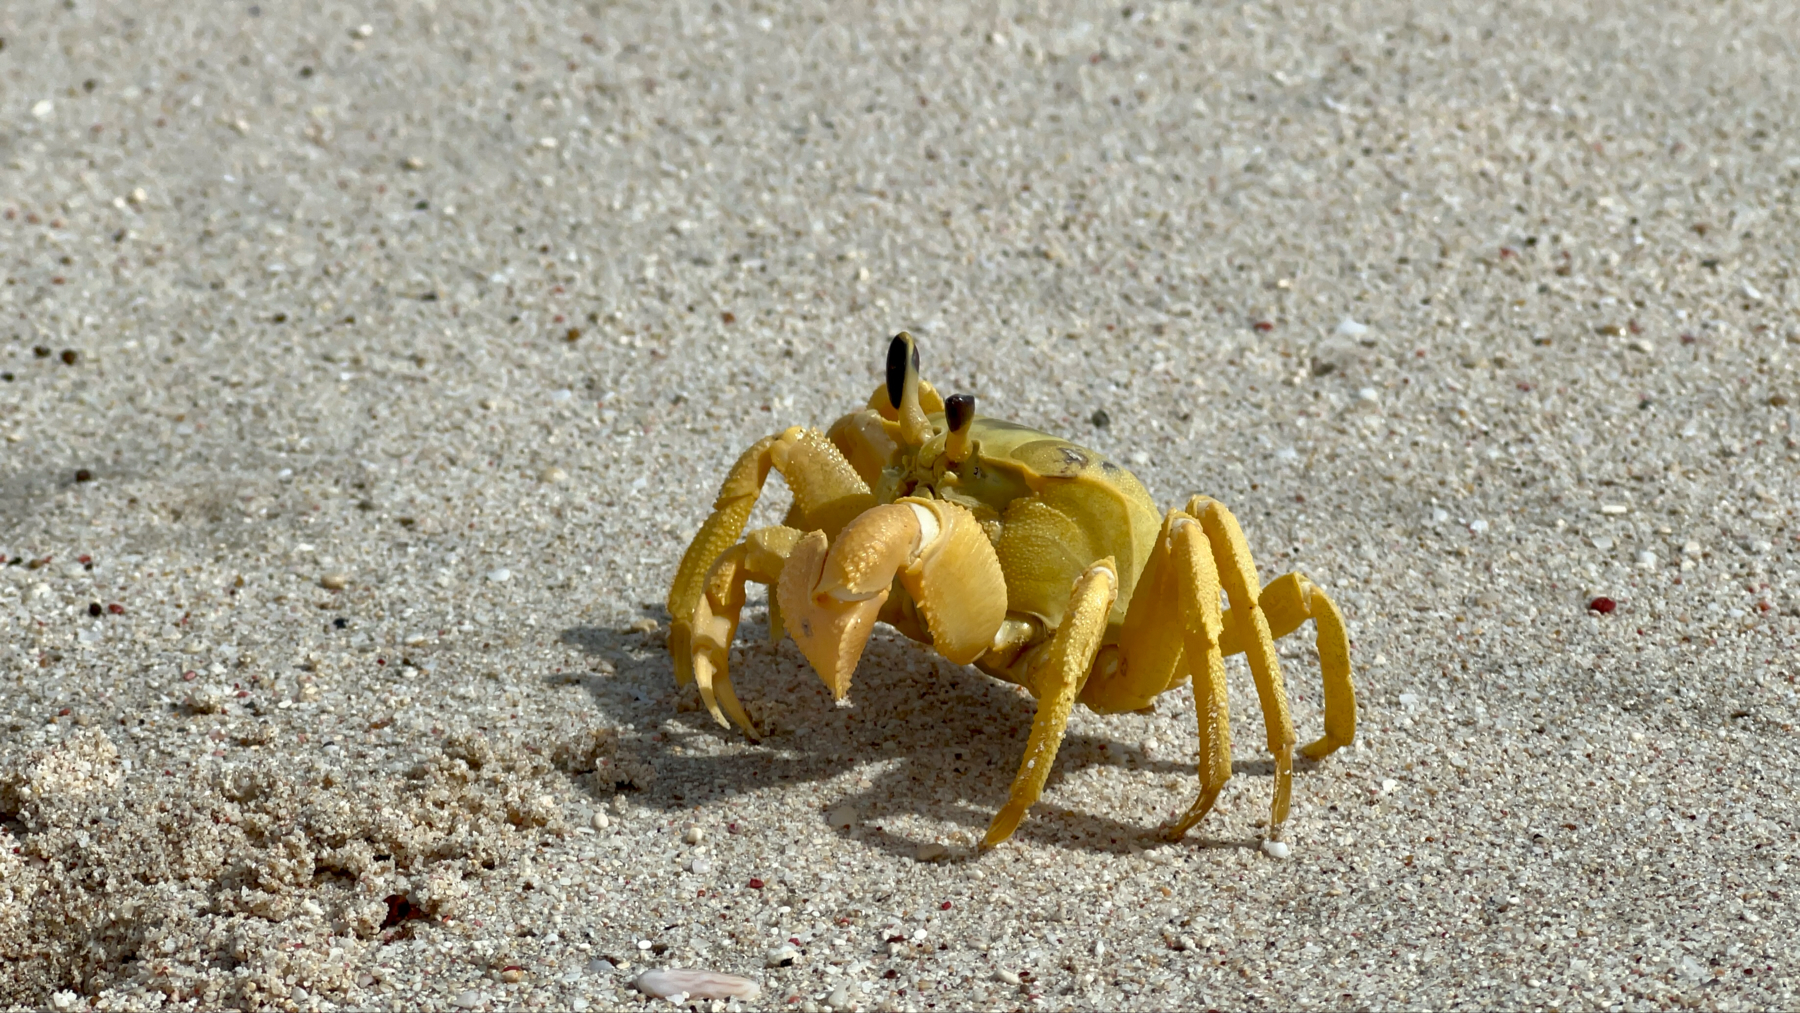 Big YellowCrab